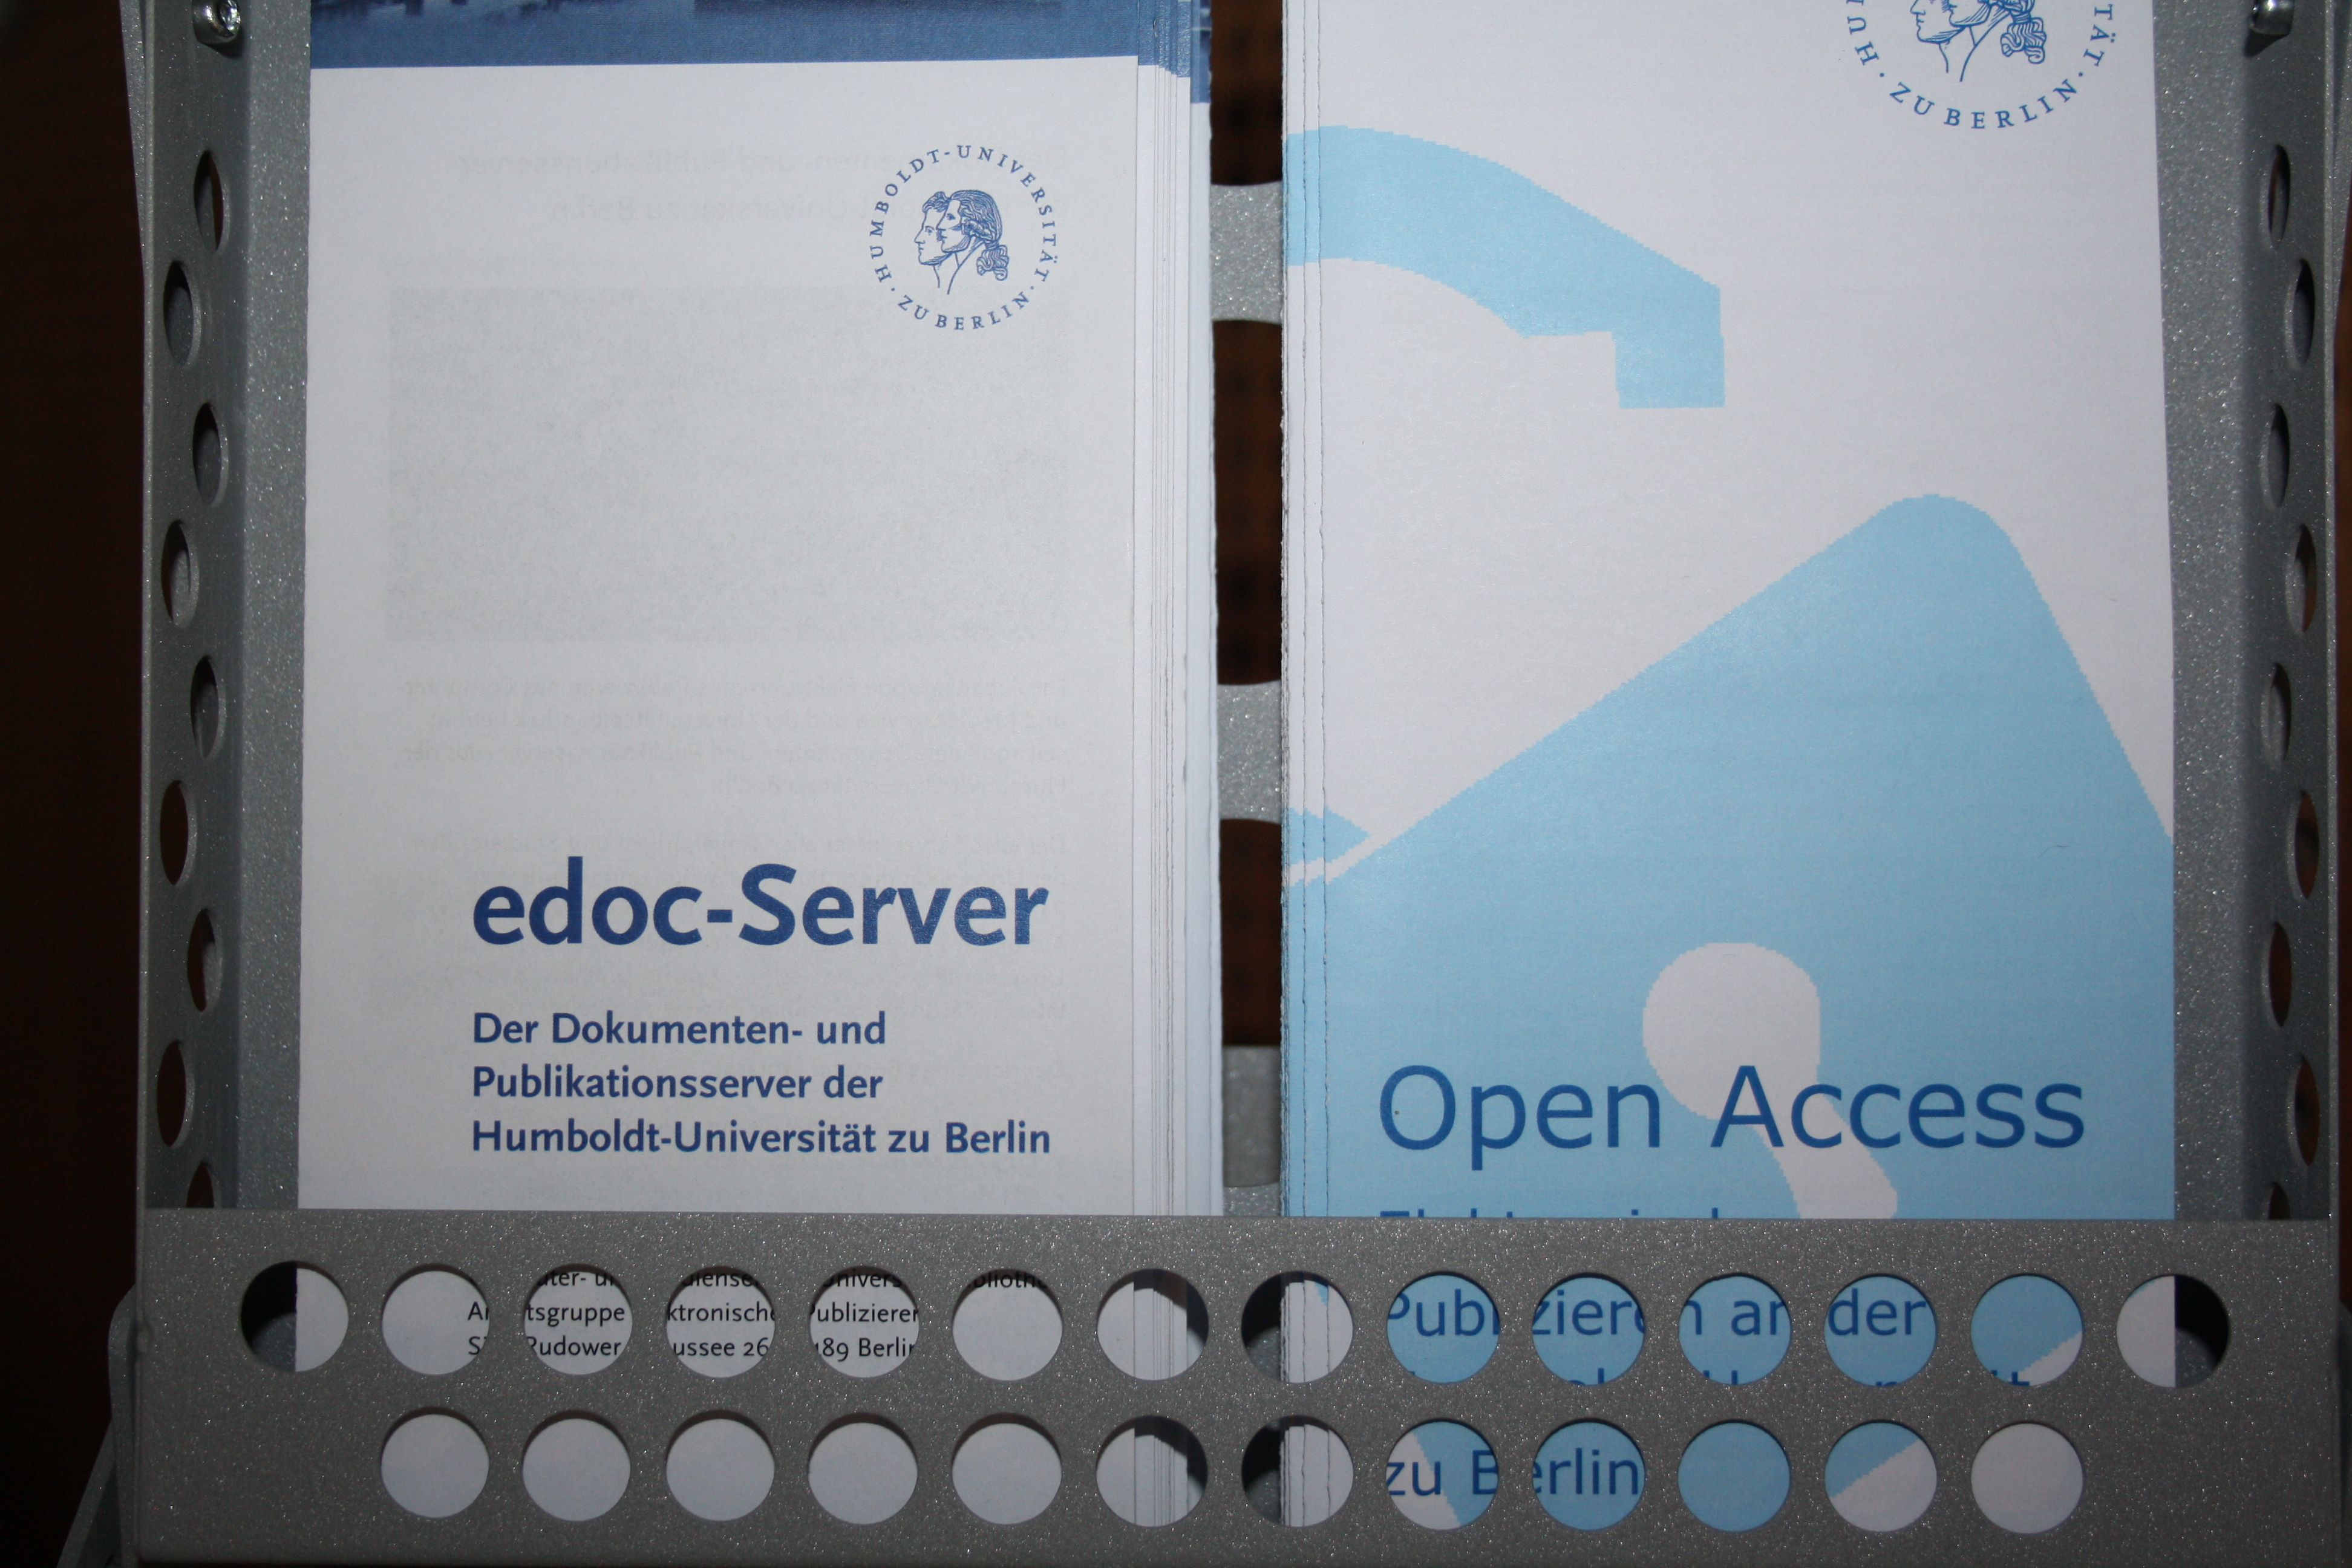 Open Access und edoc-Server zum Mitnehmen